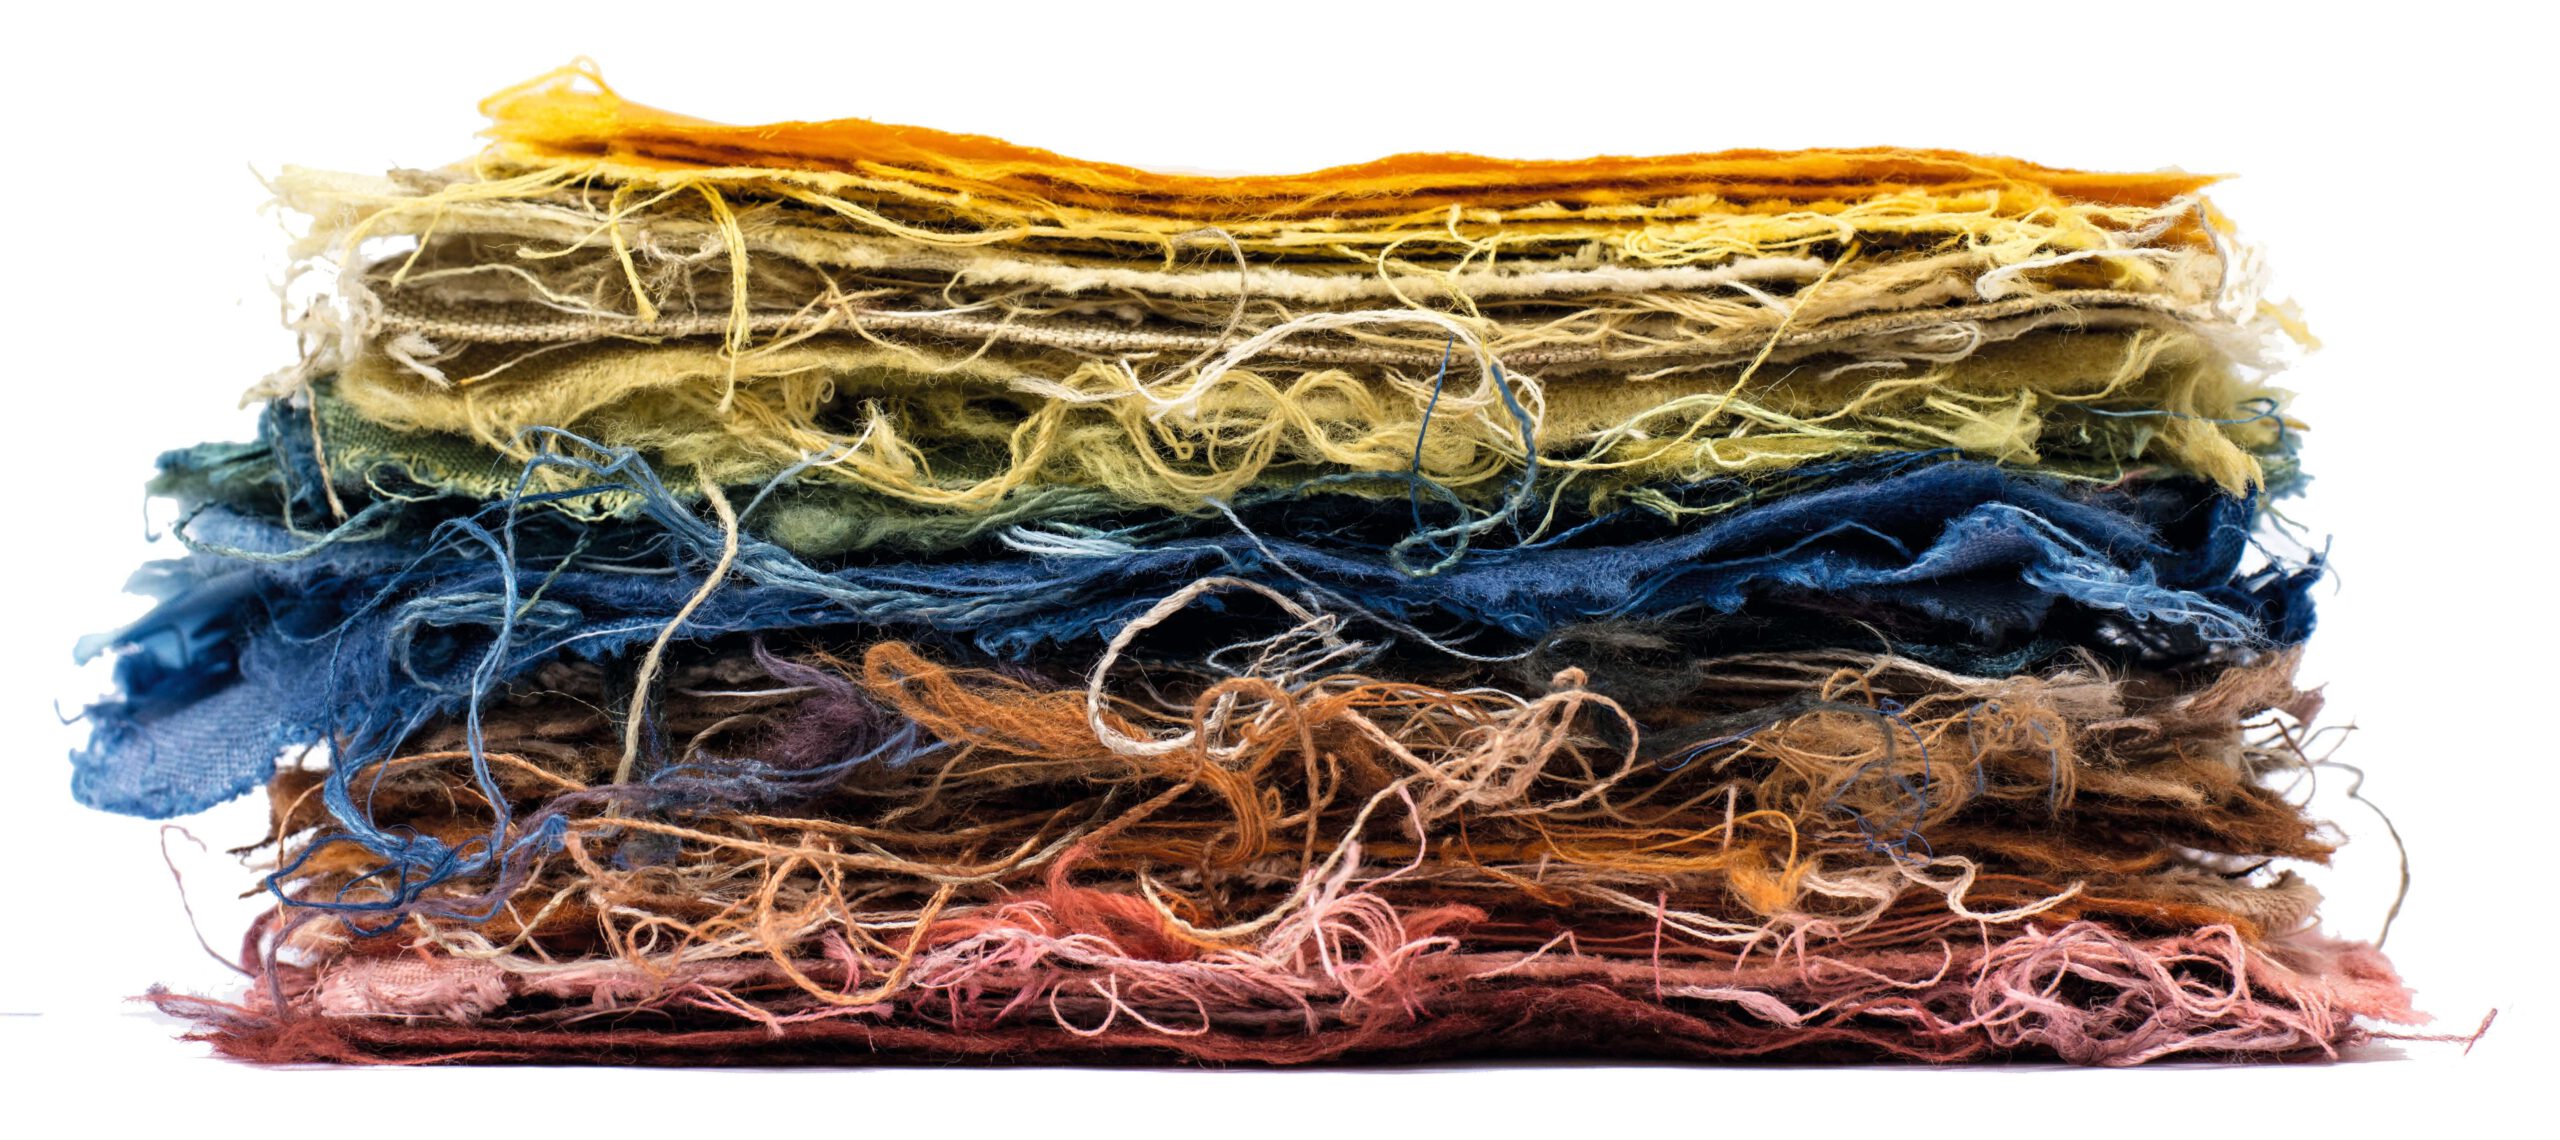 Colorcontex – Zusammenhänge zwischen Farbe und textilem Material Studie über den gegenseitigen Einfluss von Farbe und Material